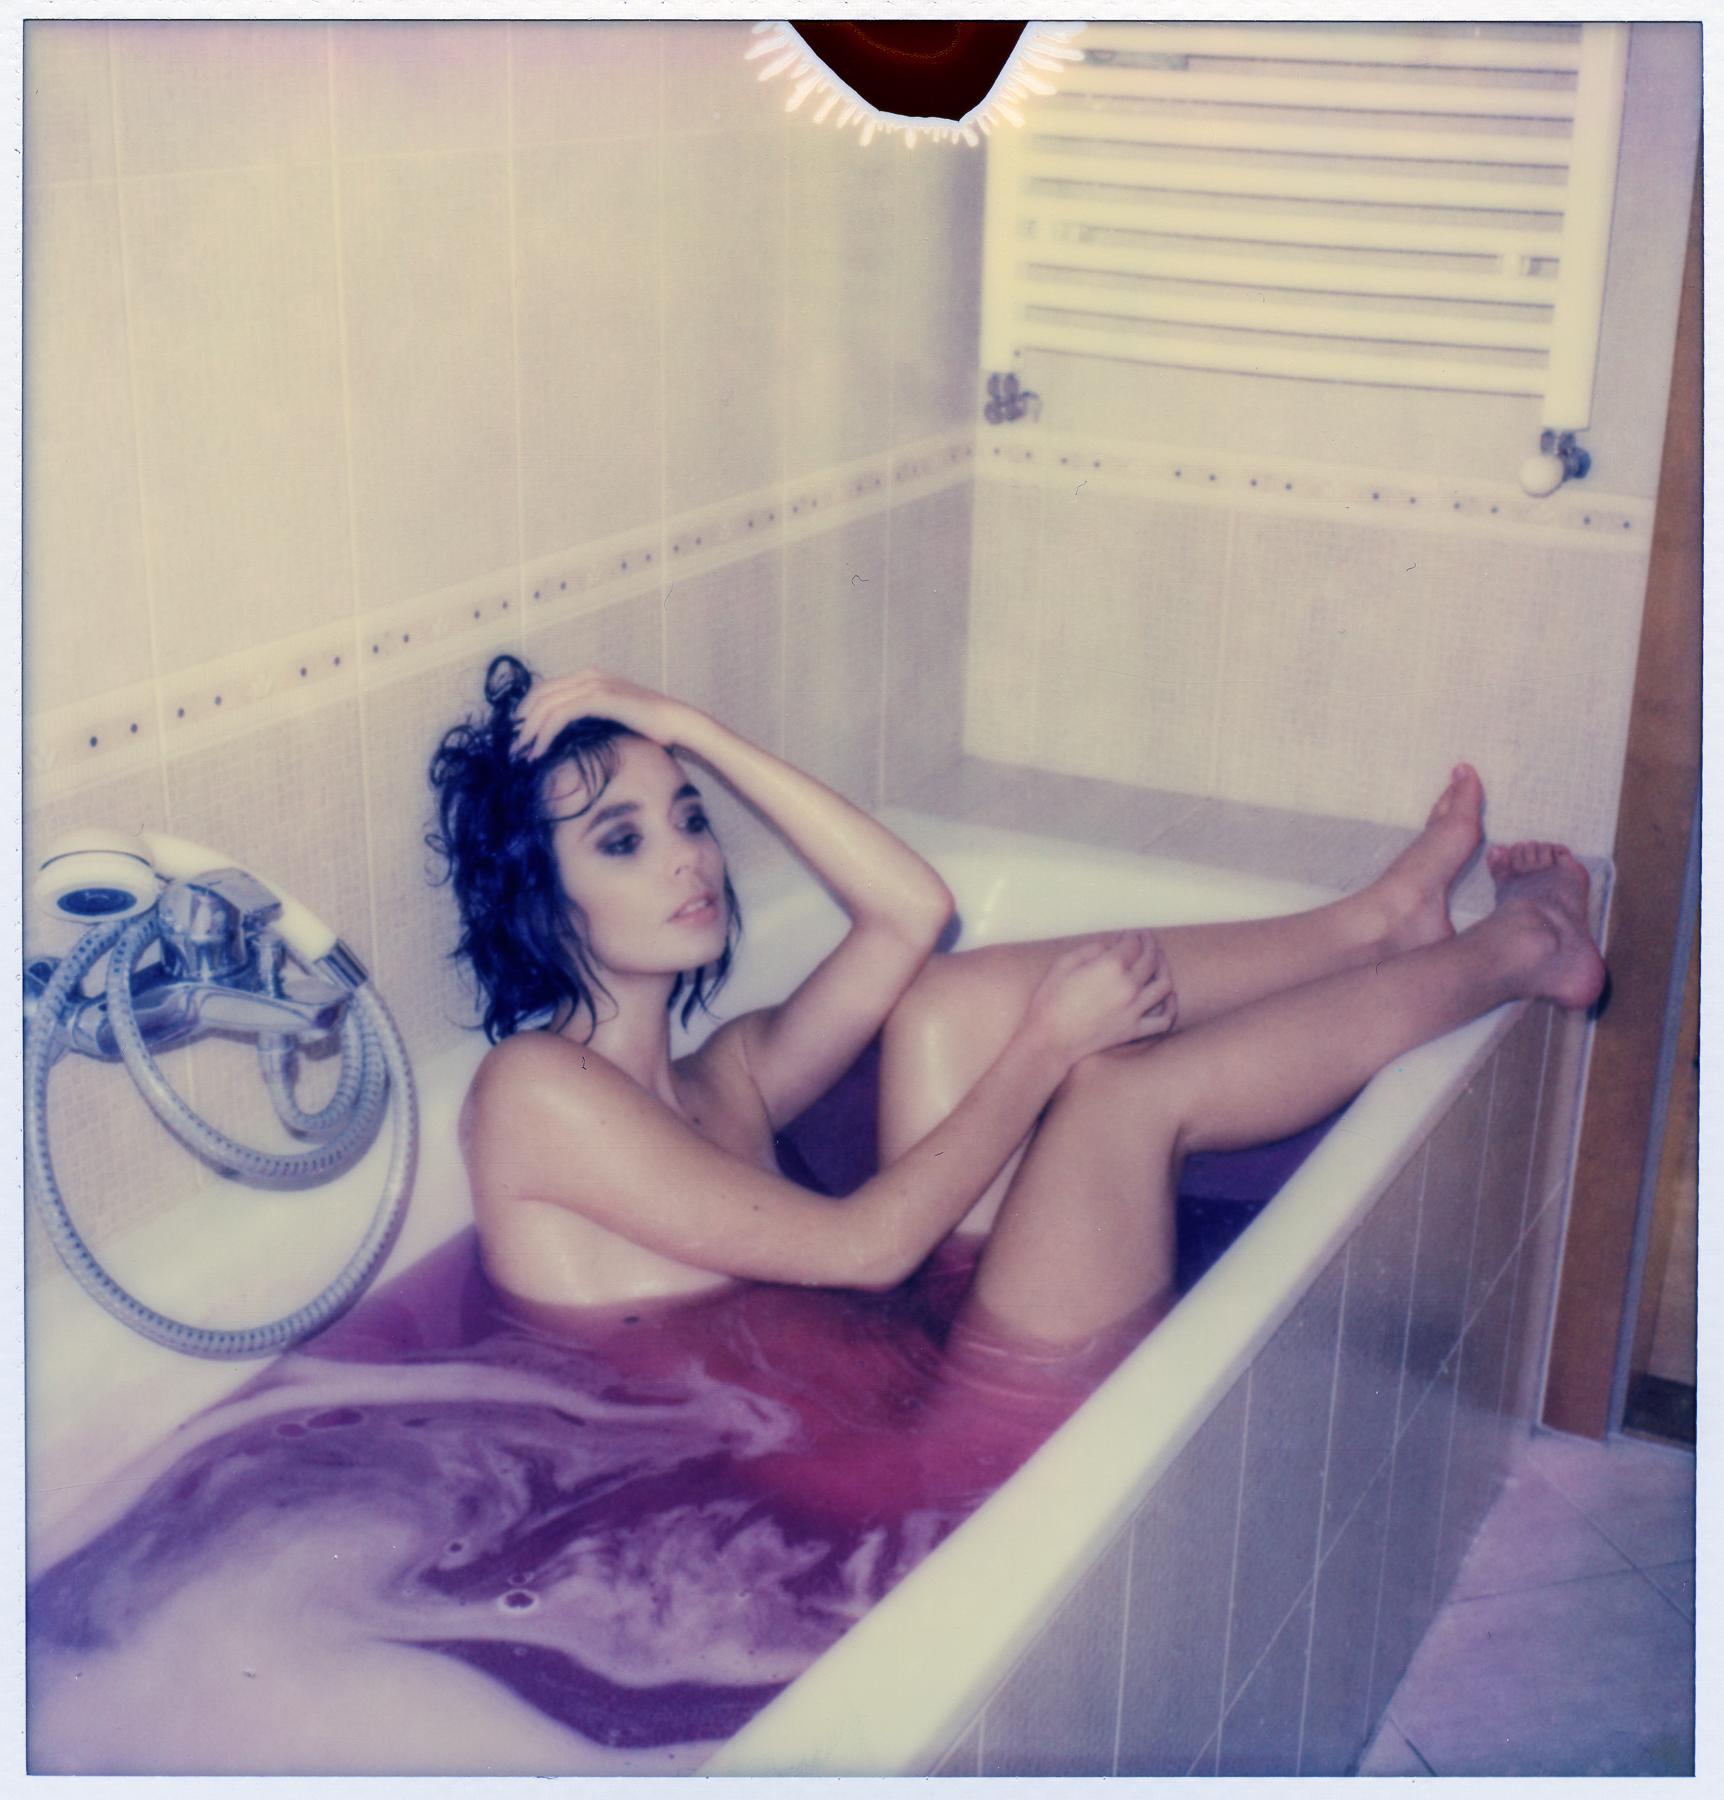 Kirsten Thys van den Audenaerde Color Photograph – Bath Time Story III - 21. Jahrhundert, Polaroid, Aktfotografie, Zeitgenössisch